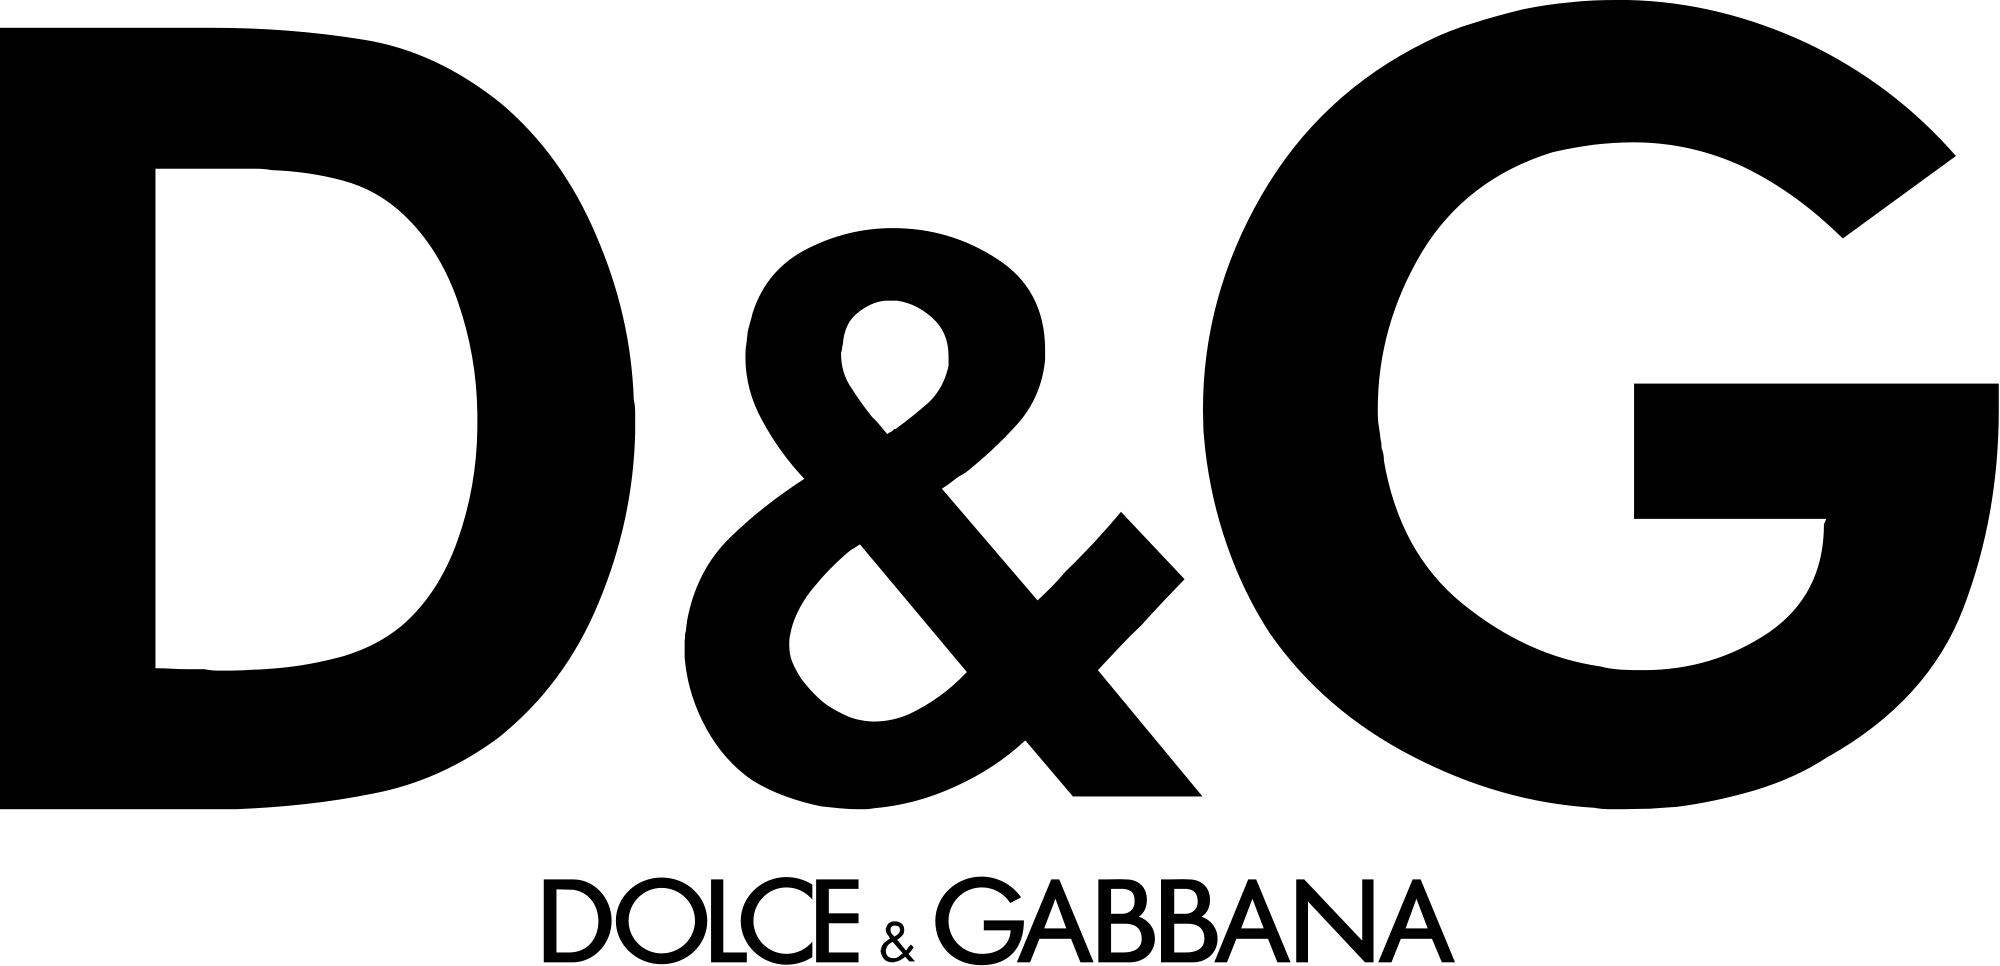 Dolce & Gabbana Logo - File:Dolce & Gabbana.svg - Wikimedia Commons